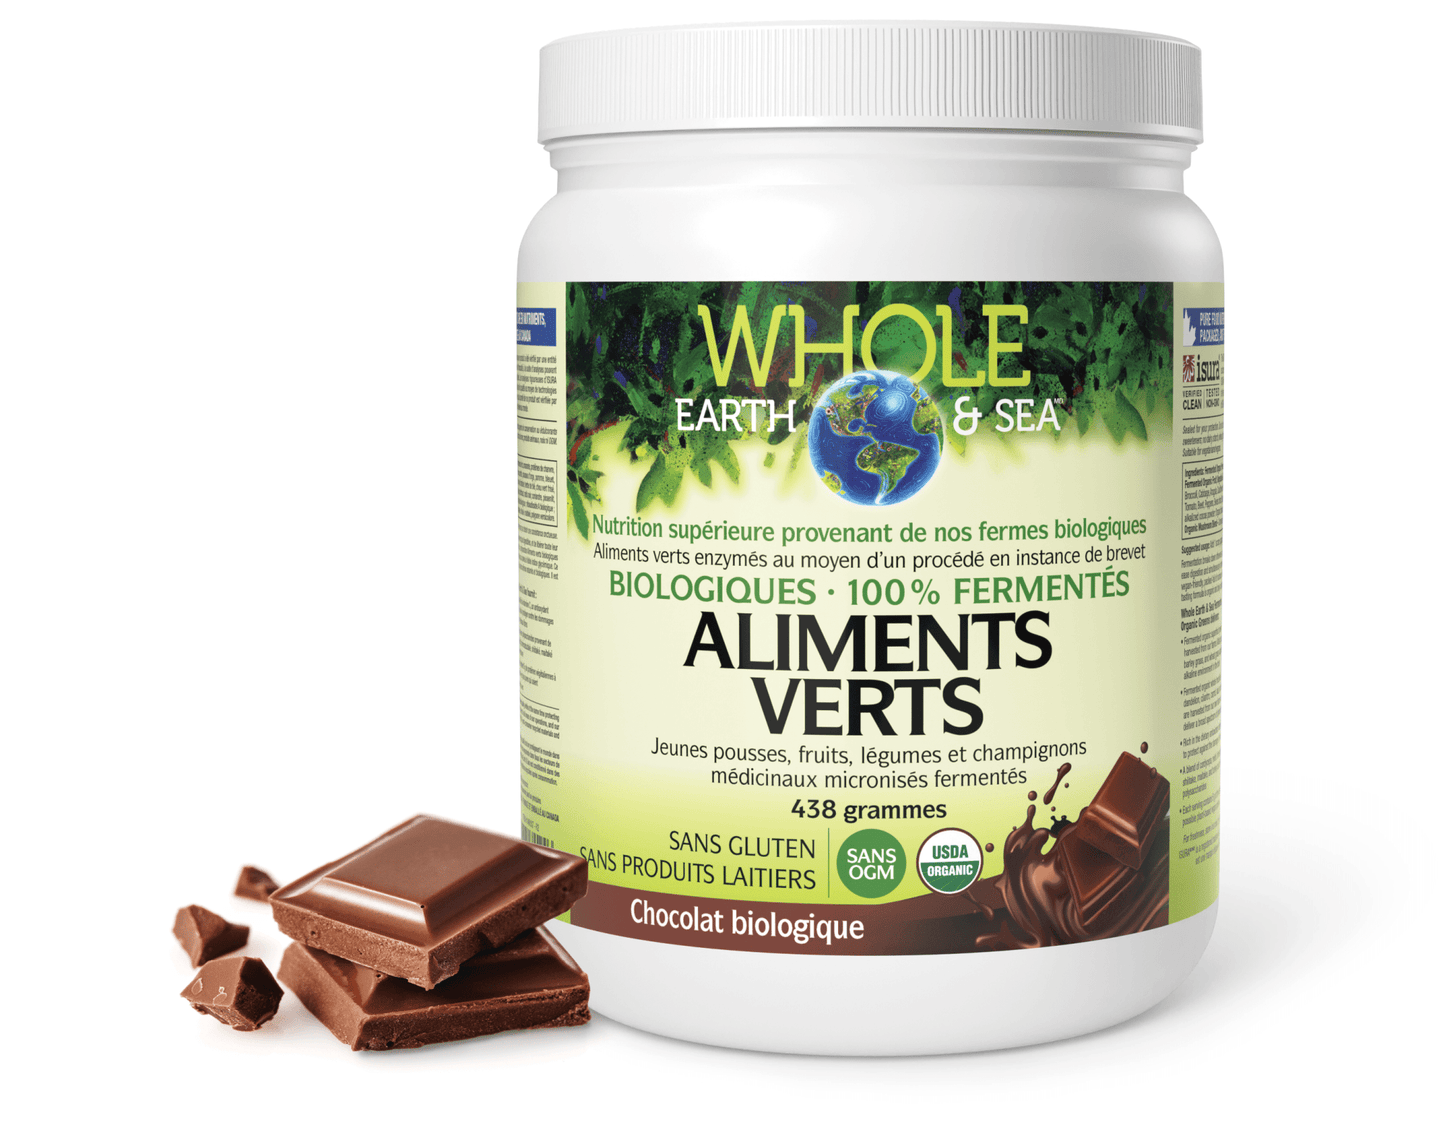 Aliments verts biologiques fermentés, chocolat biologique, Whole Earth & Sea, Whole Earth & Sea®|v|image|35524